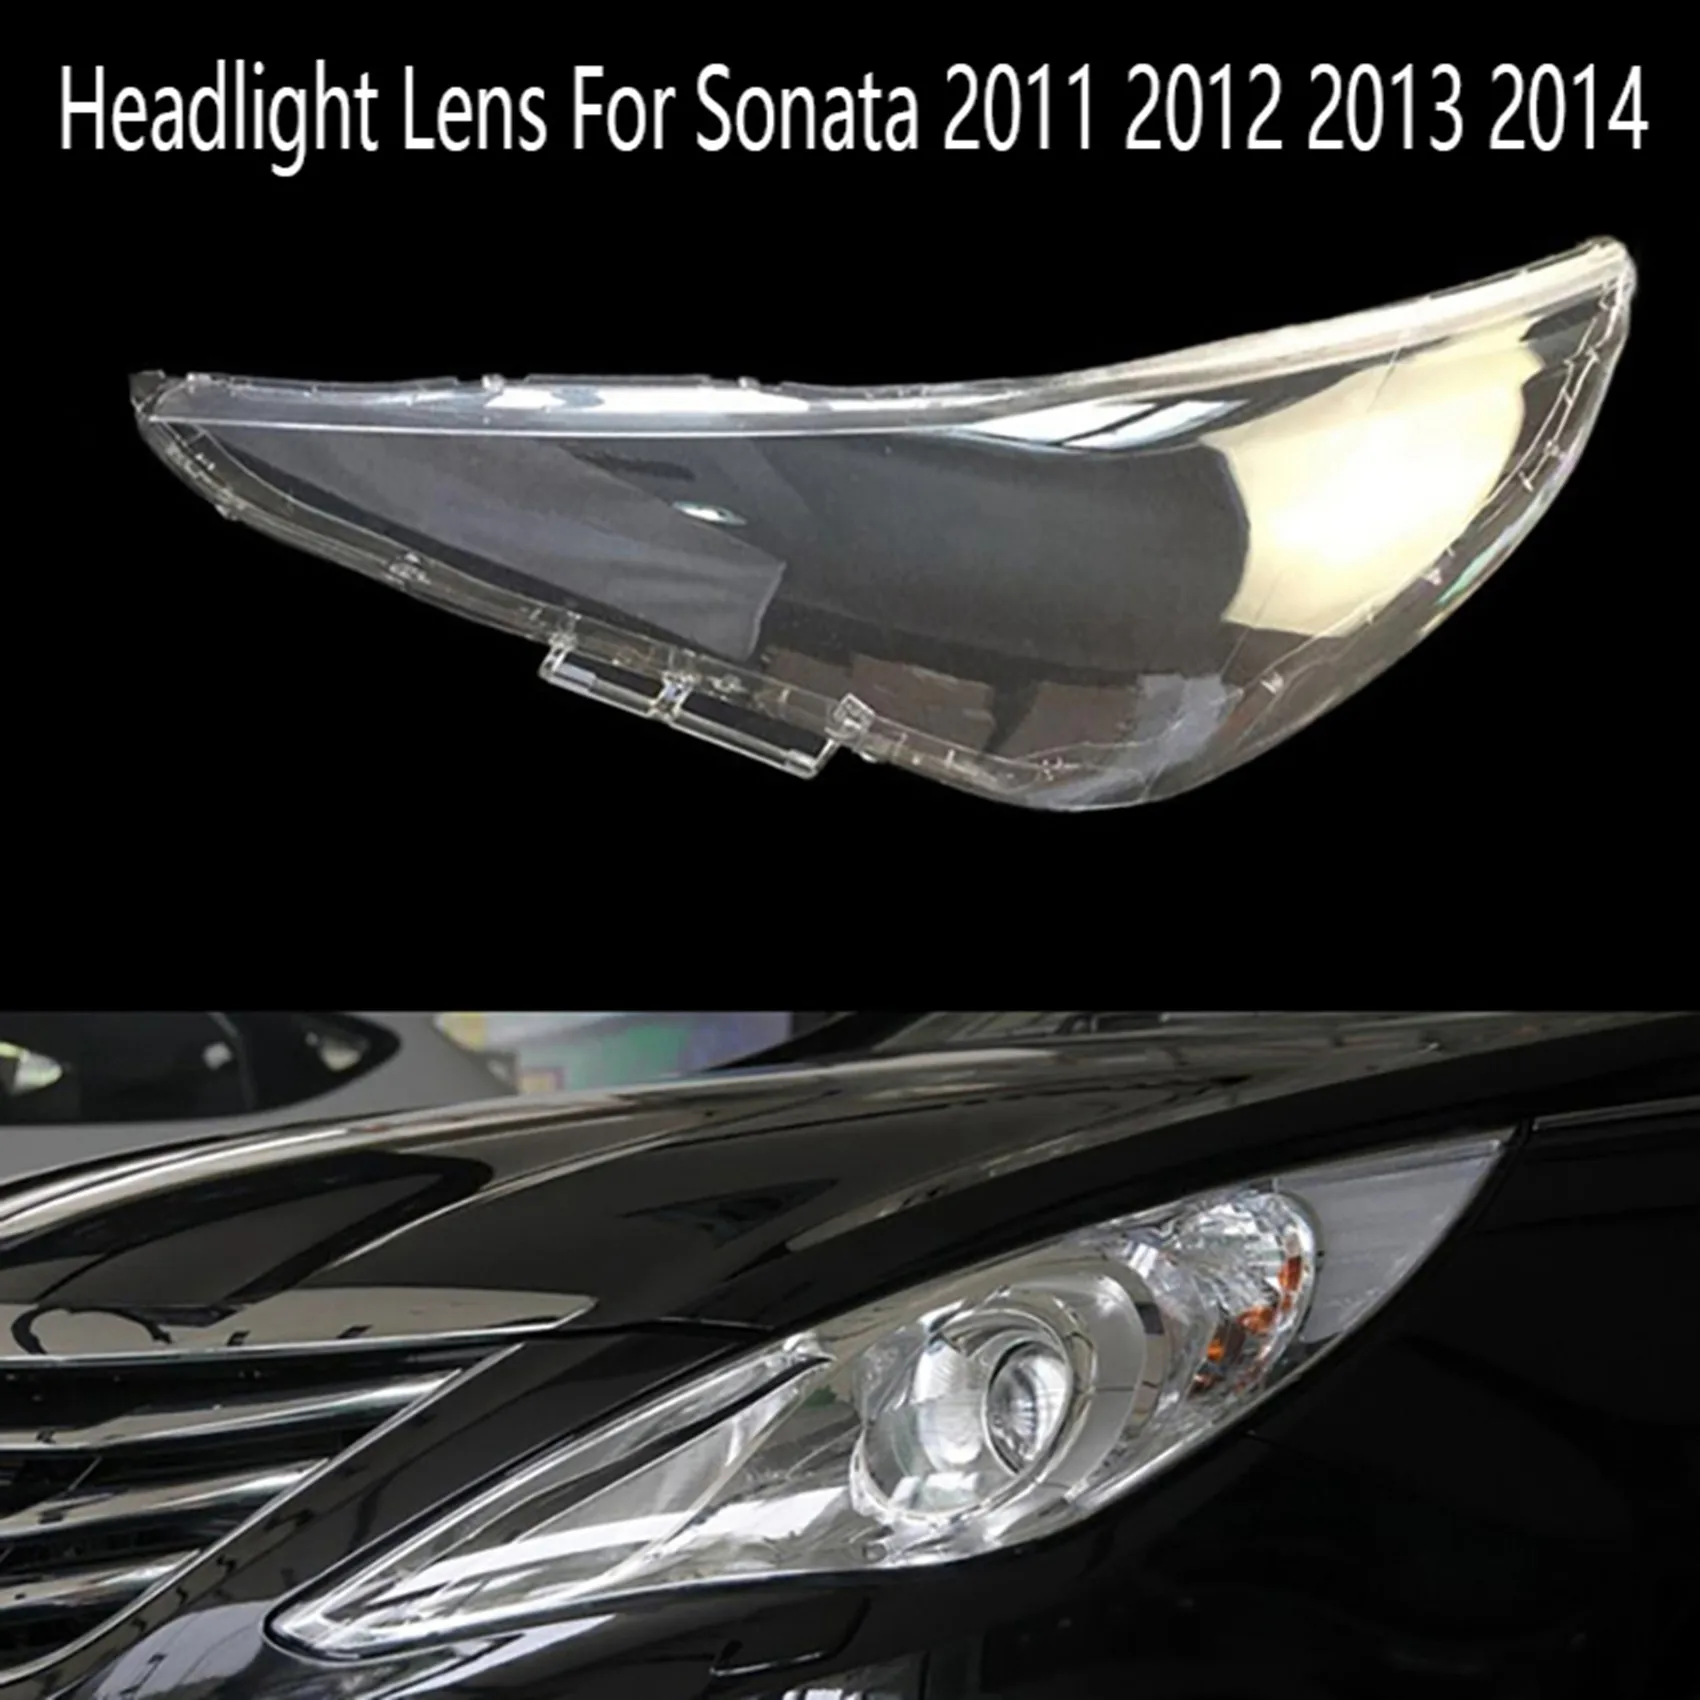 Объектив левой фары Головной свет Крышка лампы переднего автомобильного фонаря для Hyundai Sonata 2011 2012 2013 2014